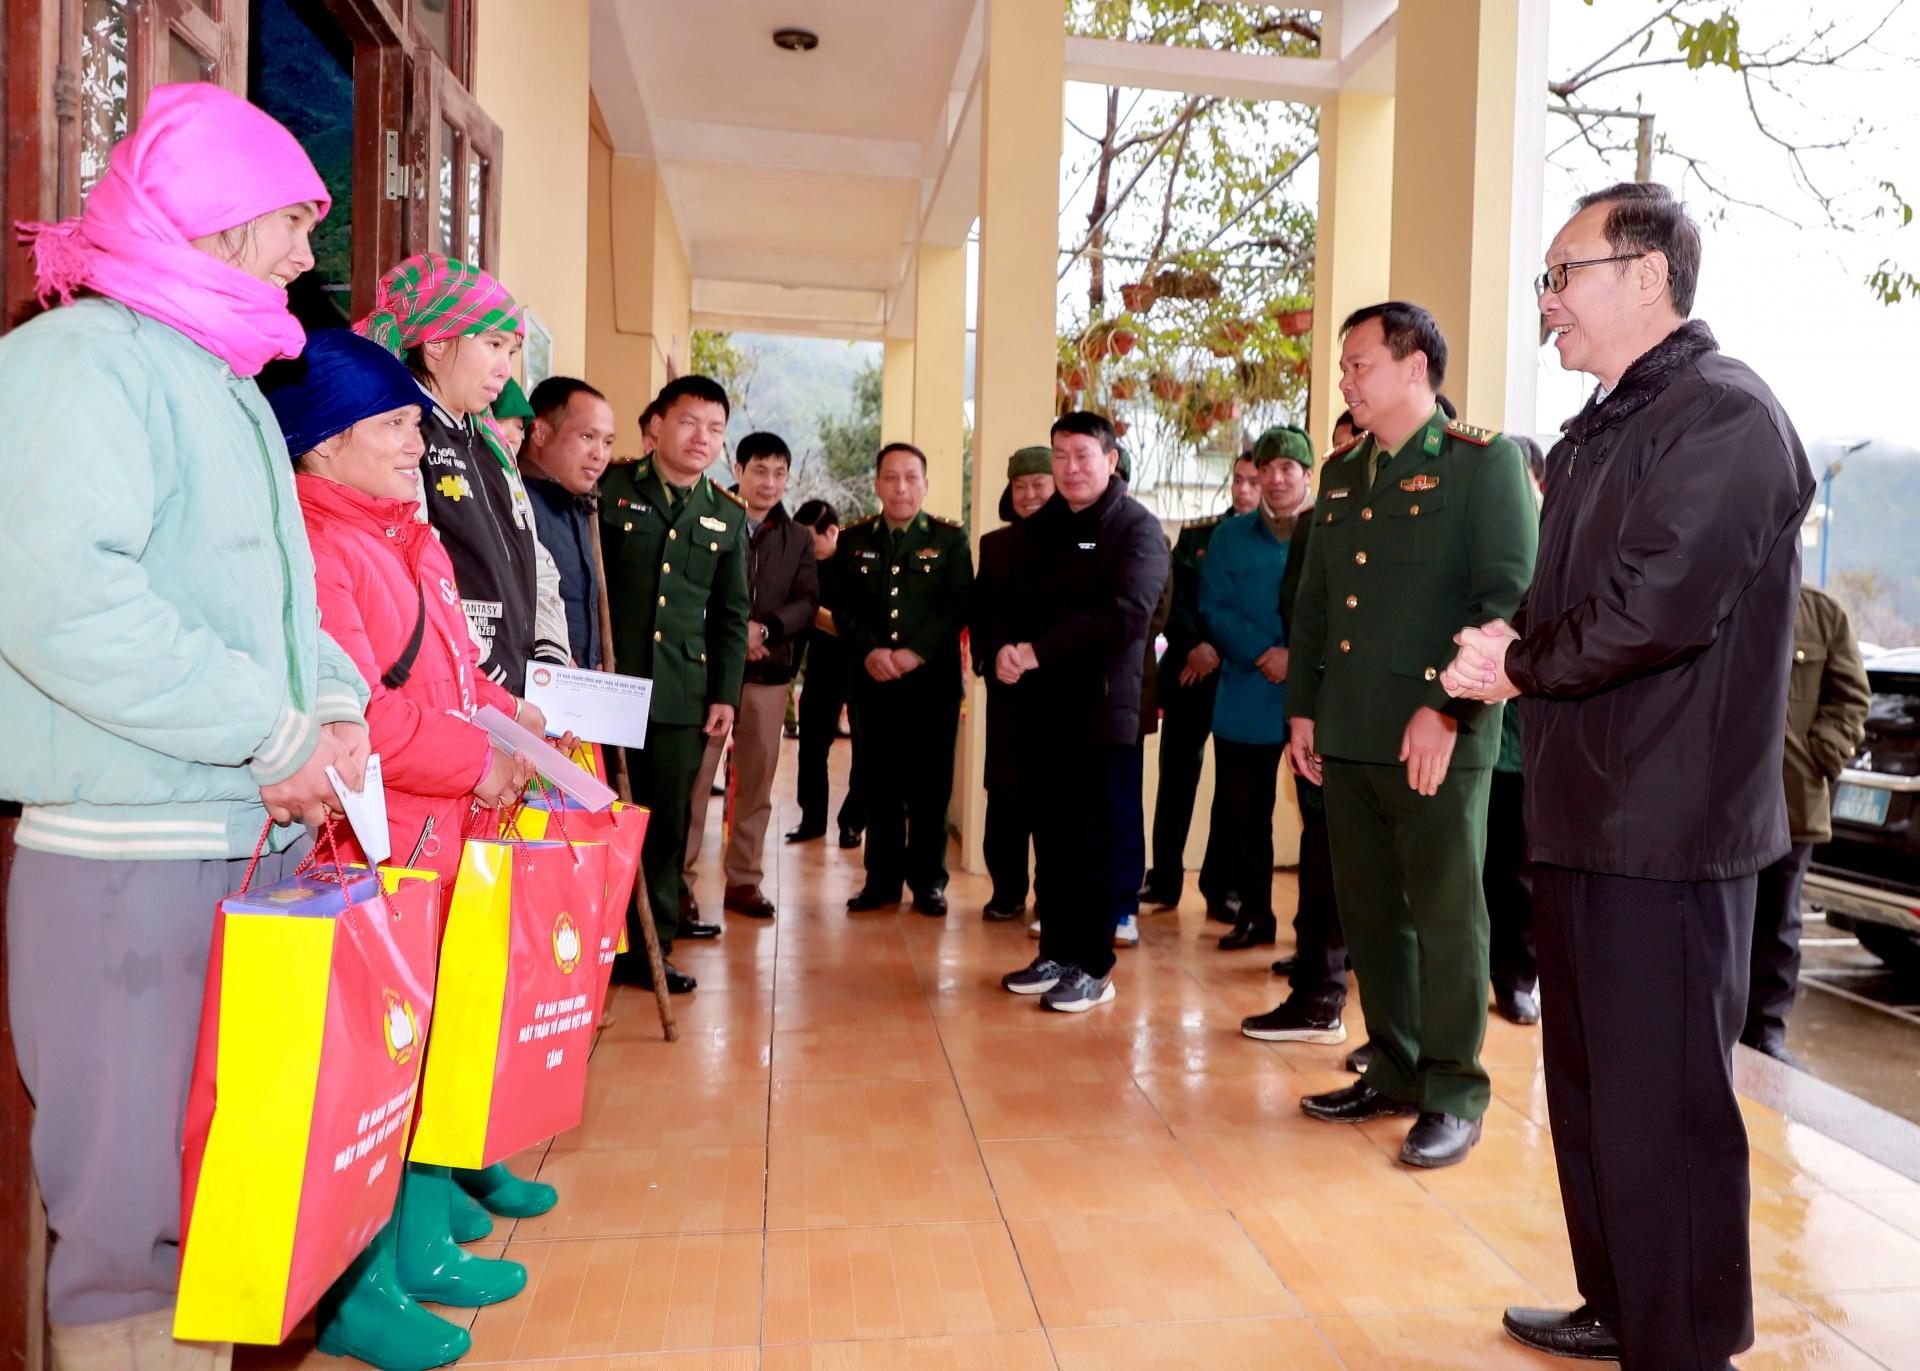 Phó Bí thư Thường trực Tỉnh ủy, Chủ tịch HĐND tỉnh Thào Hồng Sơn thăm hỏi, chúc Tết một số hộ nghèo trên địa bàn các xã Tả Ván, Tùng Vài và Cao Mã Pờ (Quản Bạ).